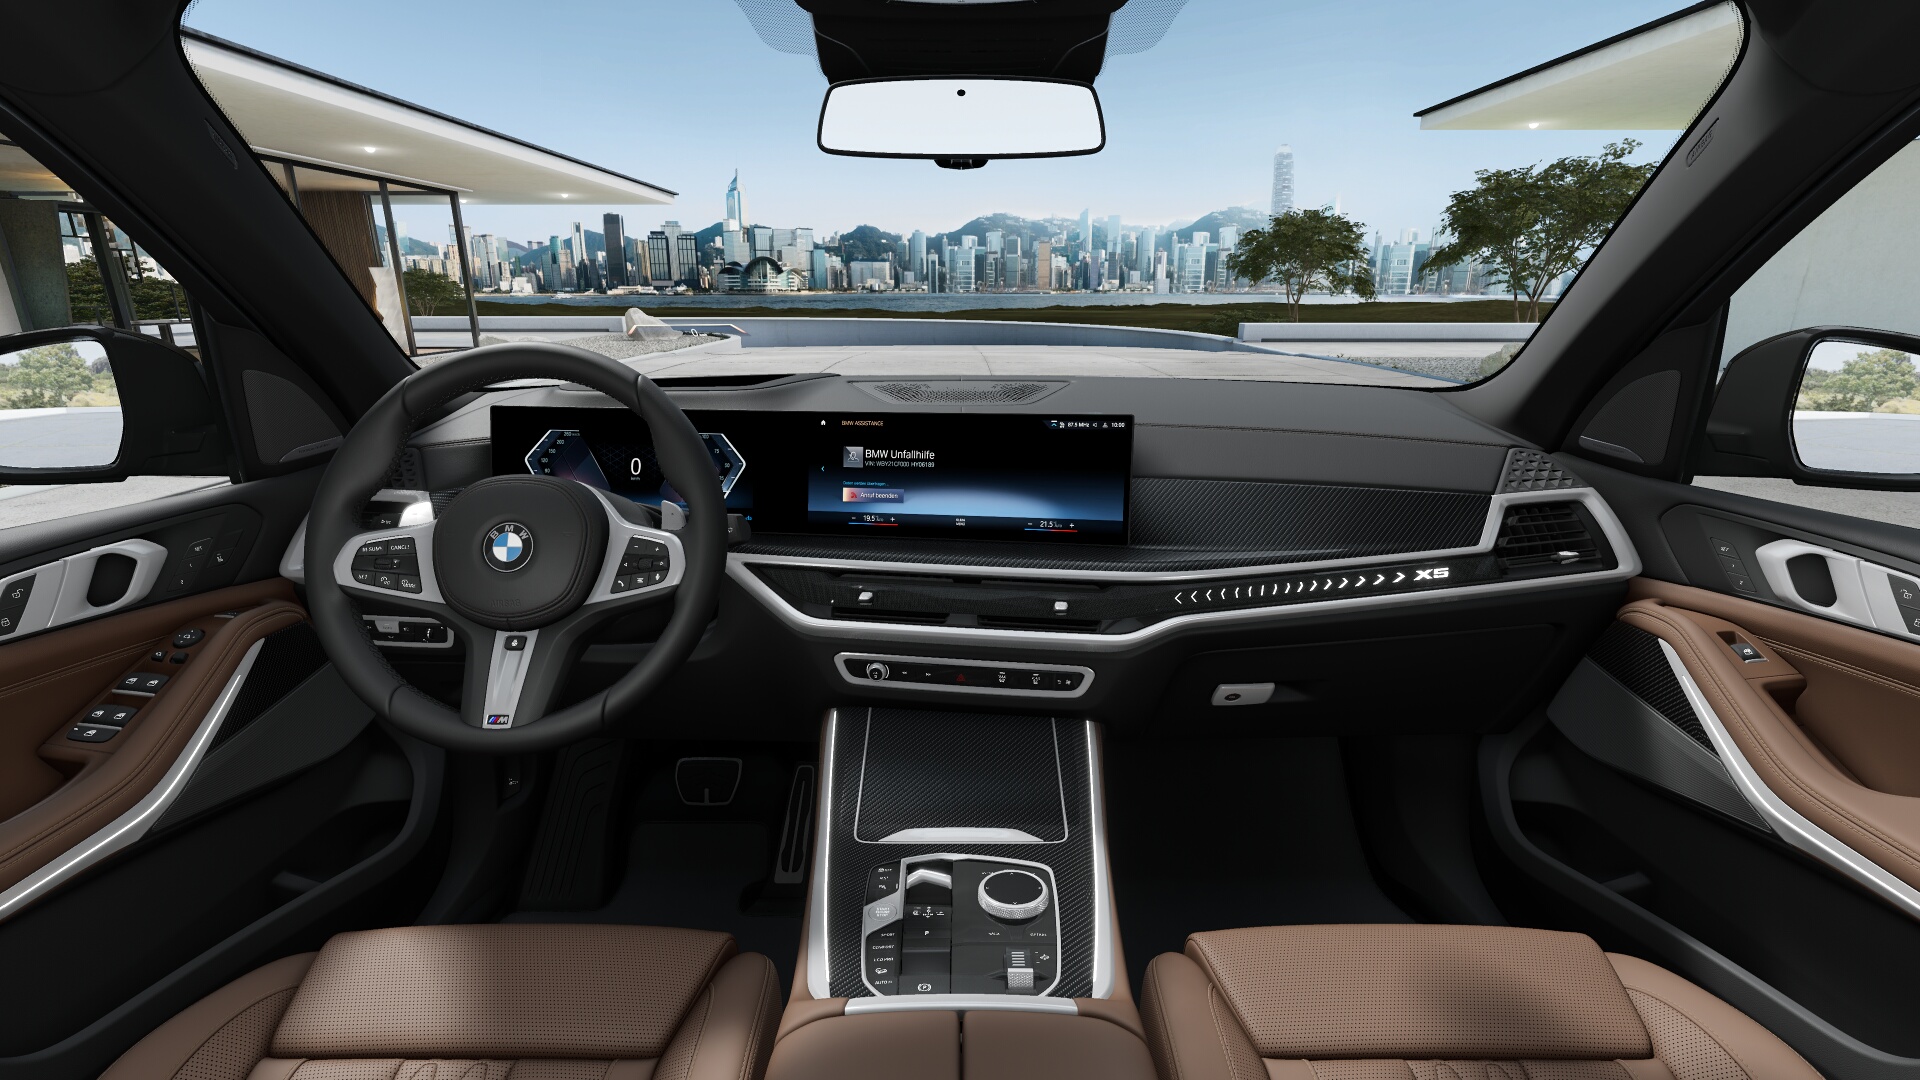 BMW X5 40d xDrive Msport | nové auto objednané do výroby | FACELIFT | sportovně luxusní naftové SUV | maximální výbava | skvělá cena | skladem a ihned k předání | objednání online | auto eshop AUTOiBUY.com